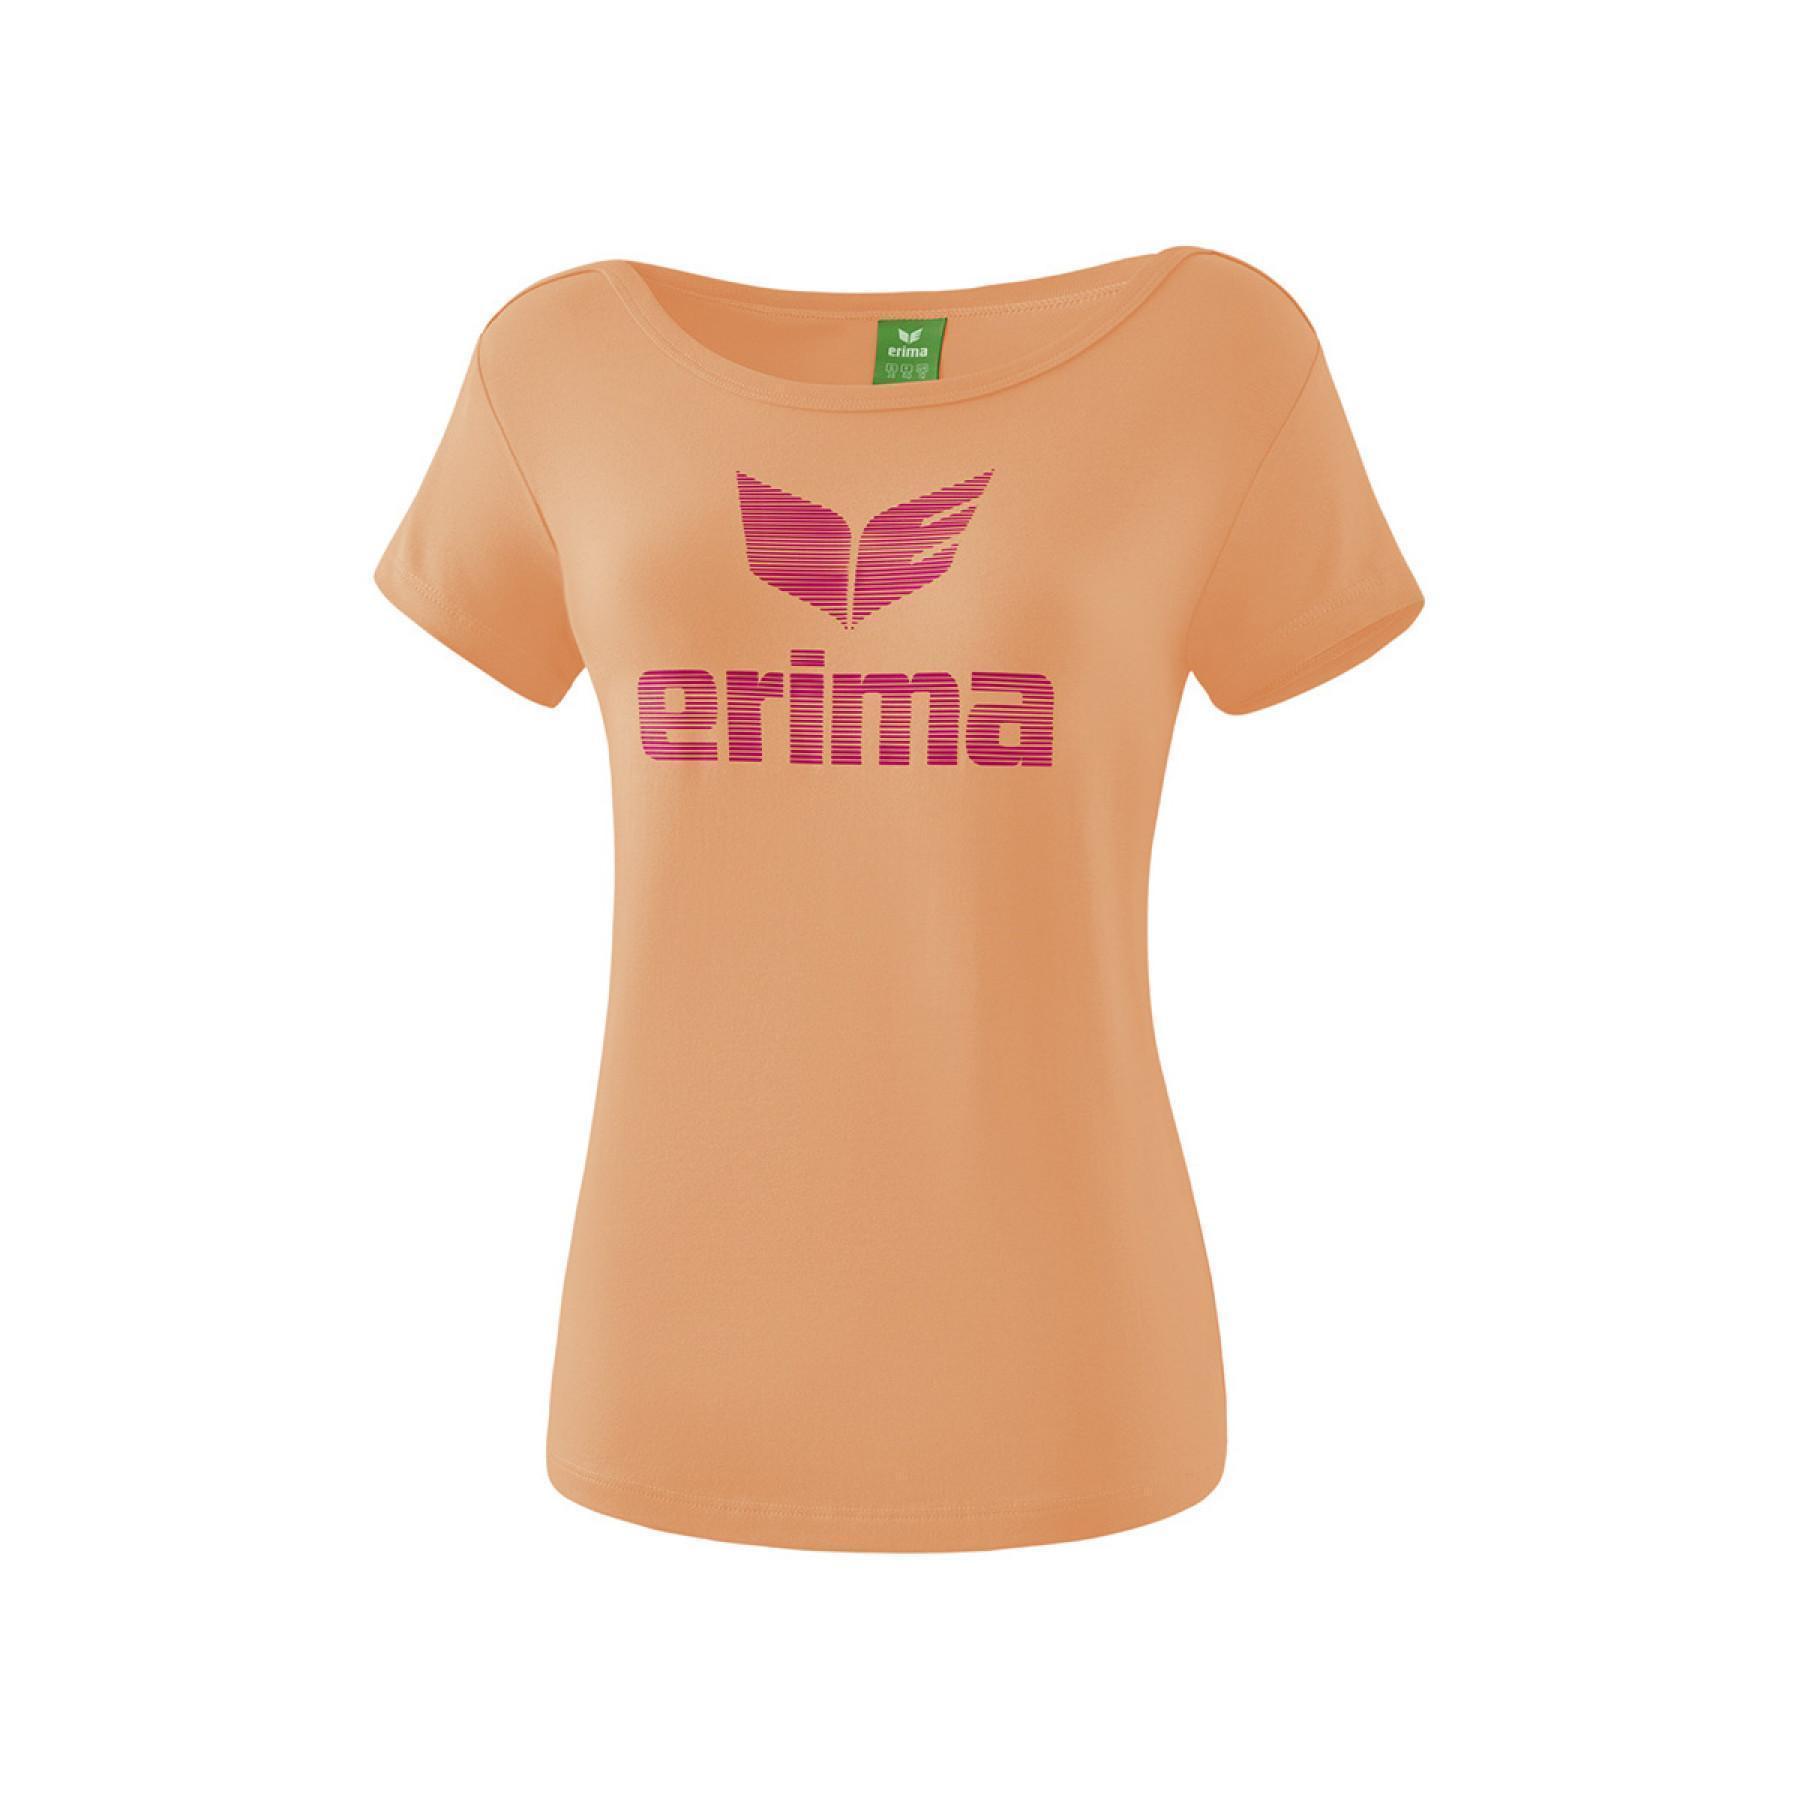 Koszulka dla dzieci Erima Essential